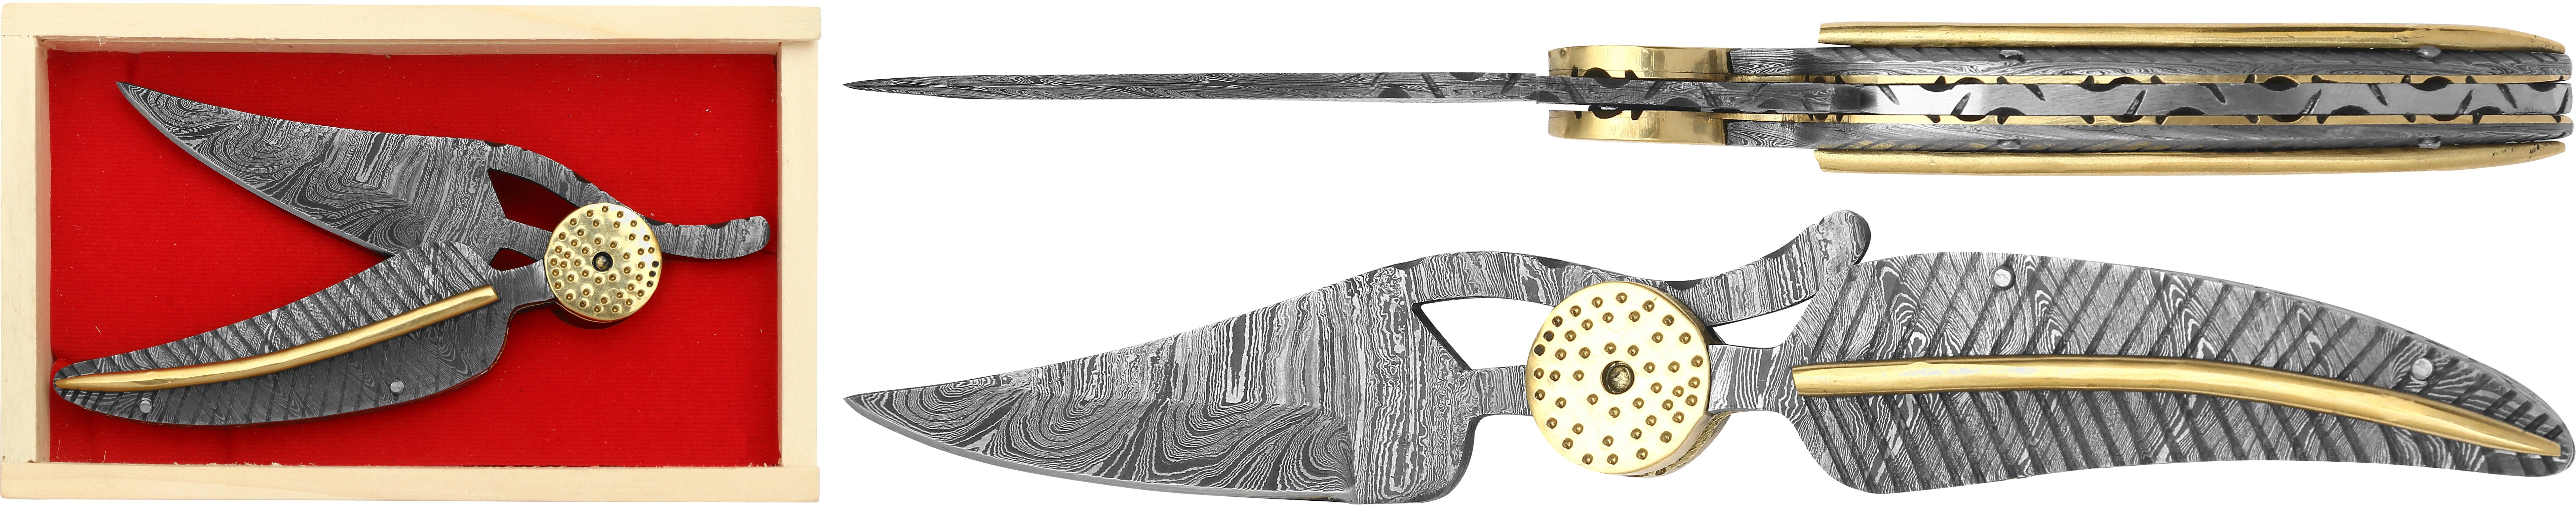 DAMAS - Couteau 12 cm - plume royal